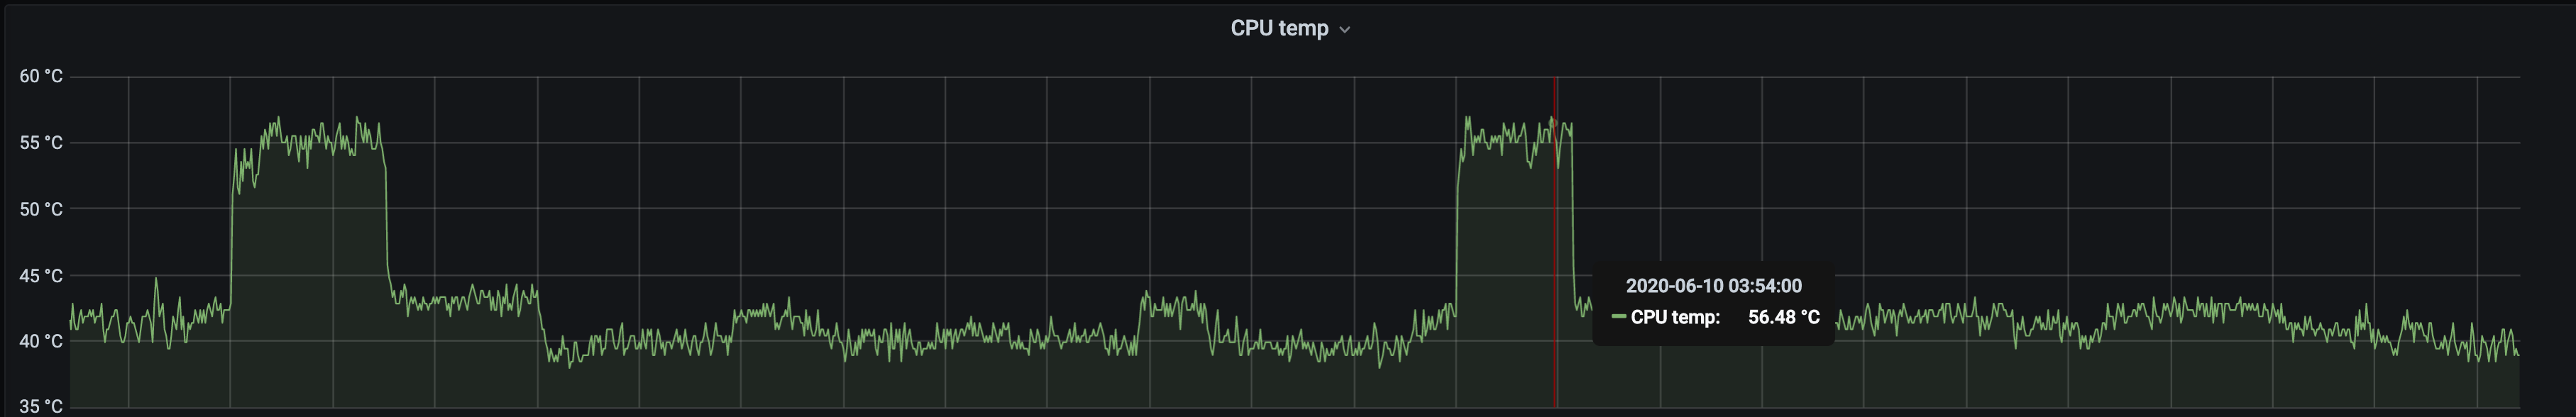 average CPU temp 40-41C with 55C under full load